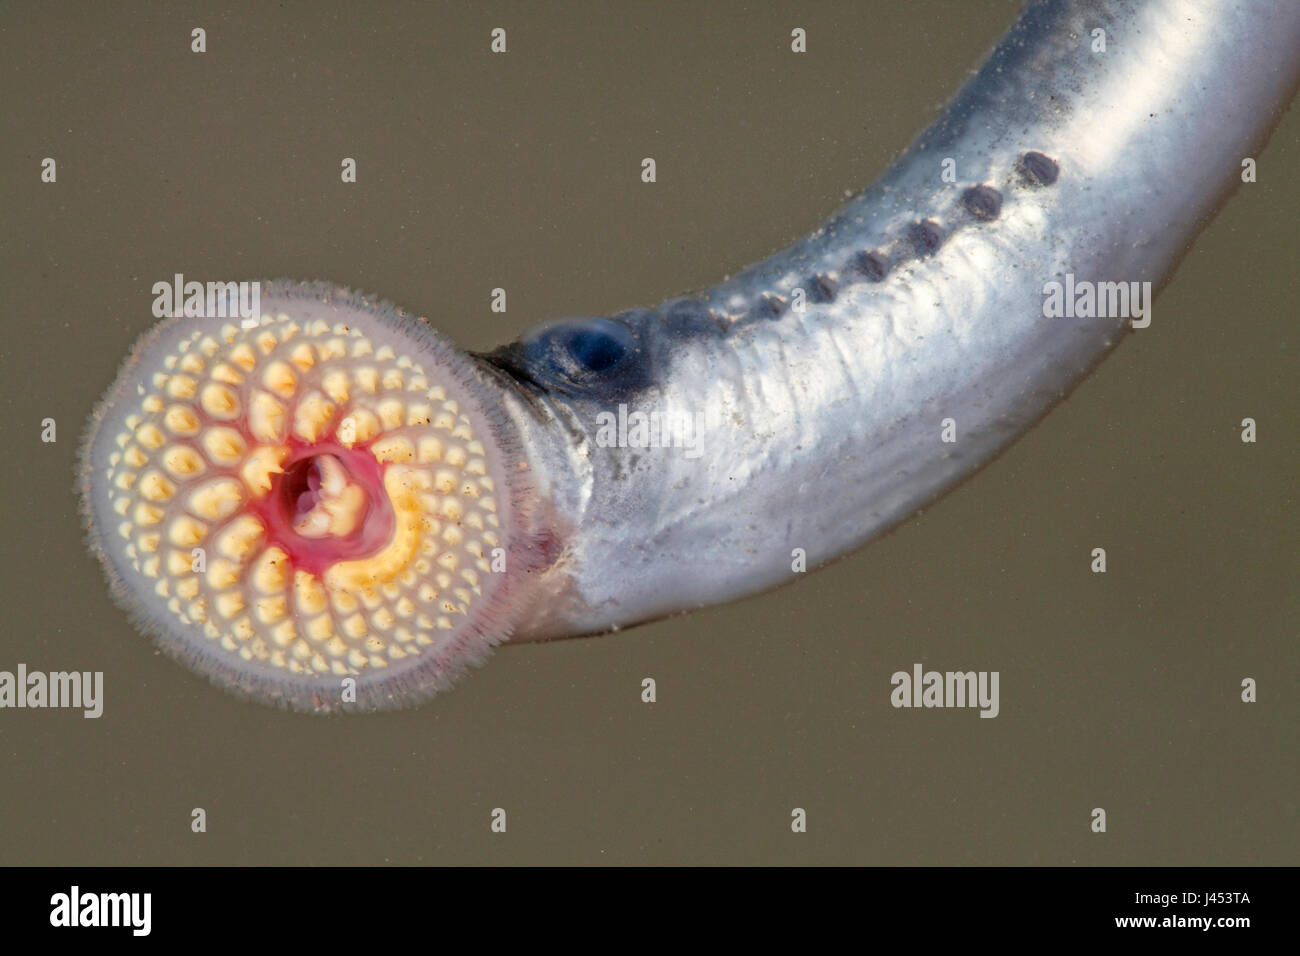 junge Meerneunauge mit seinem Mund öffnen, so dass die zylindrisch platzierte Zähne gut sichtbar sind Stockfoto